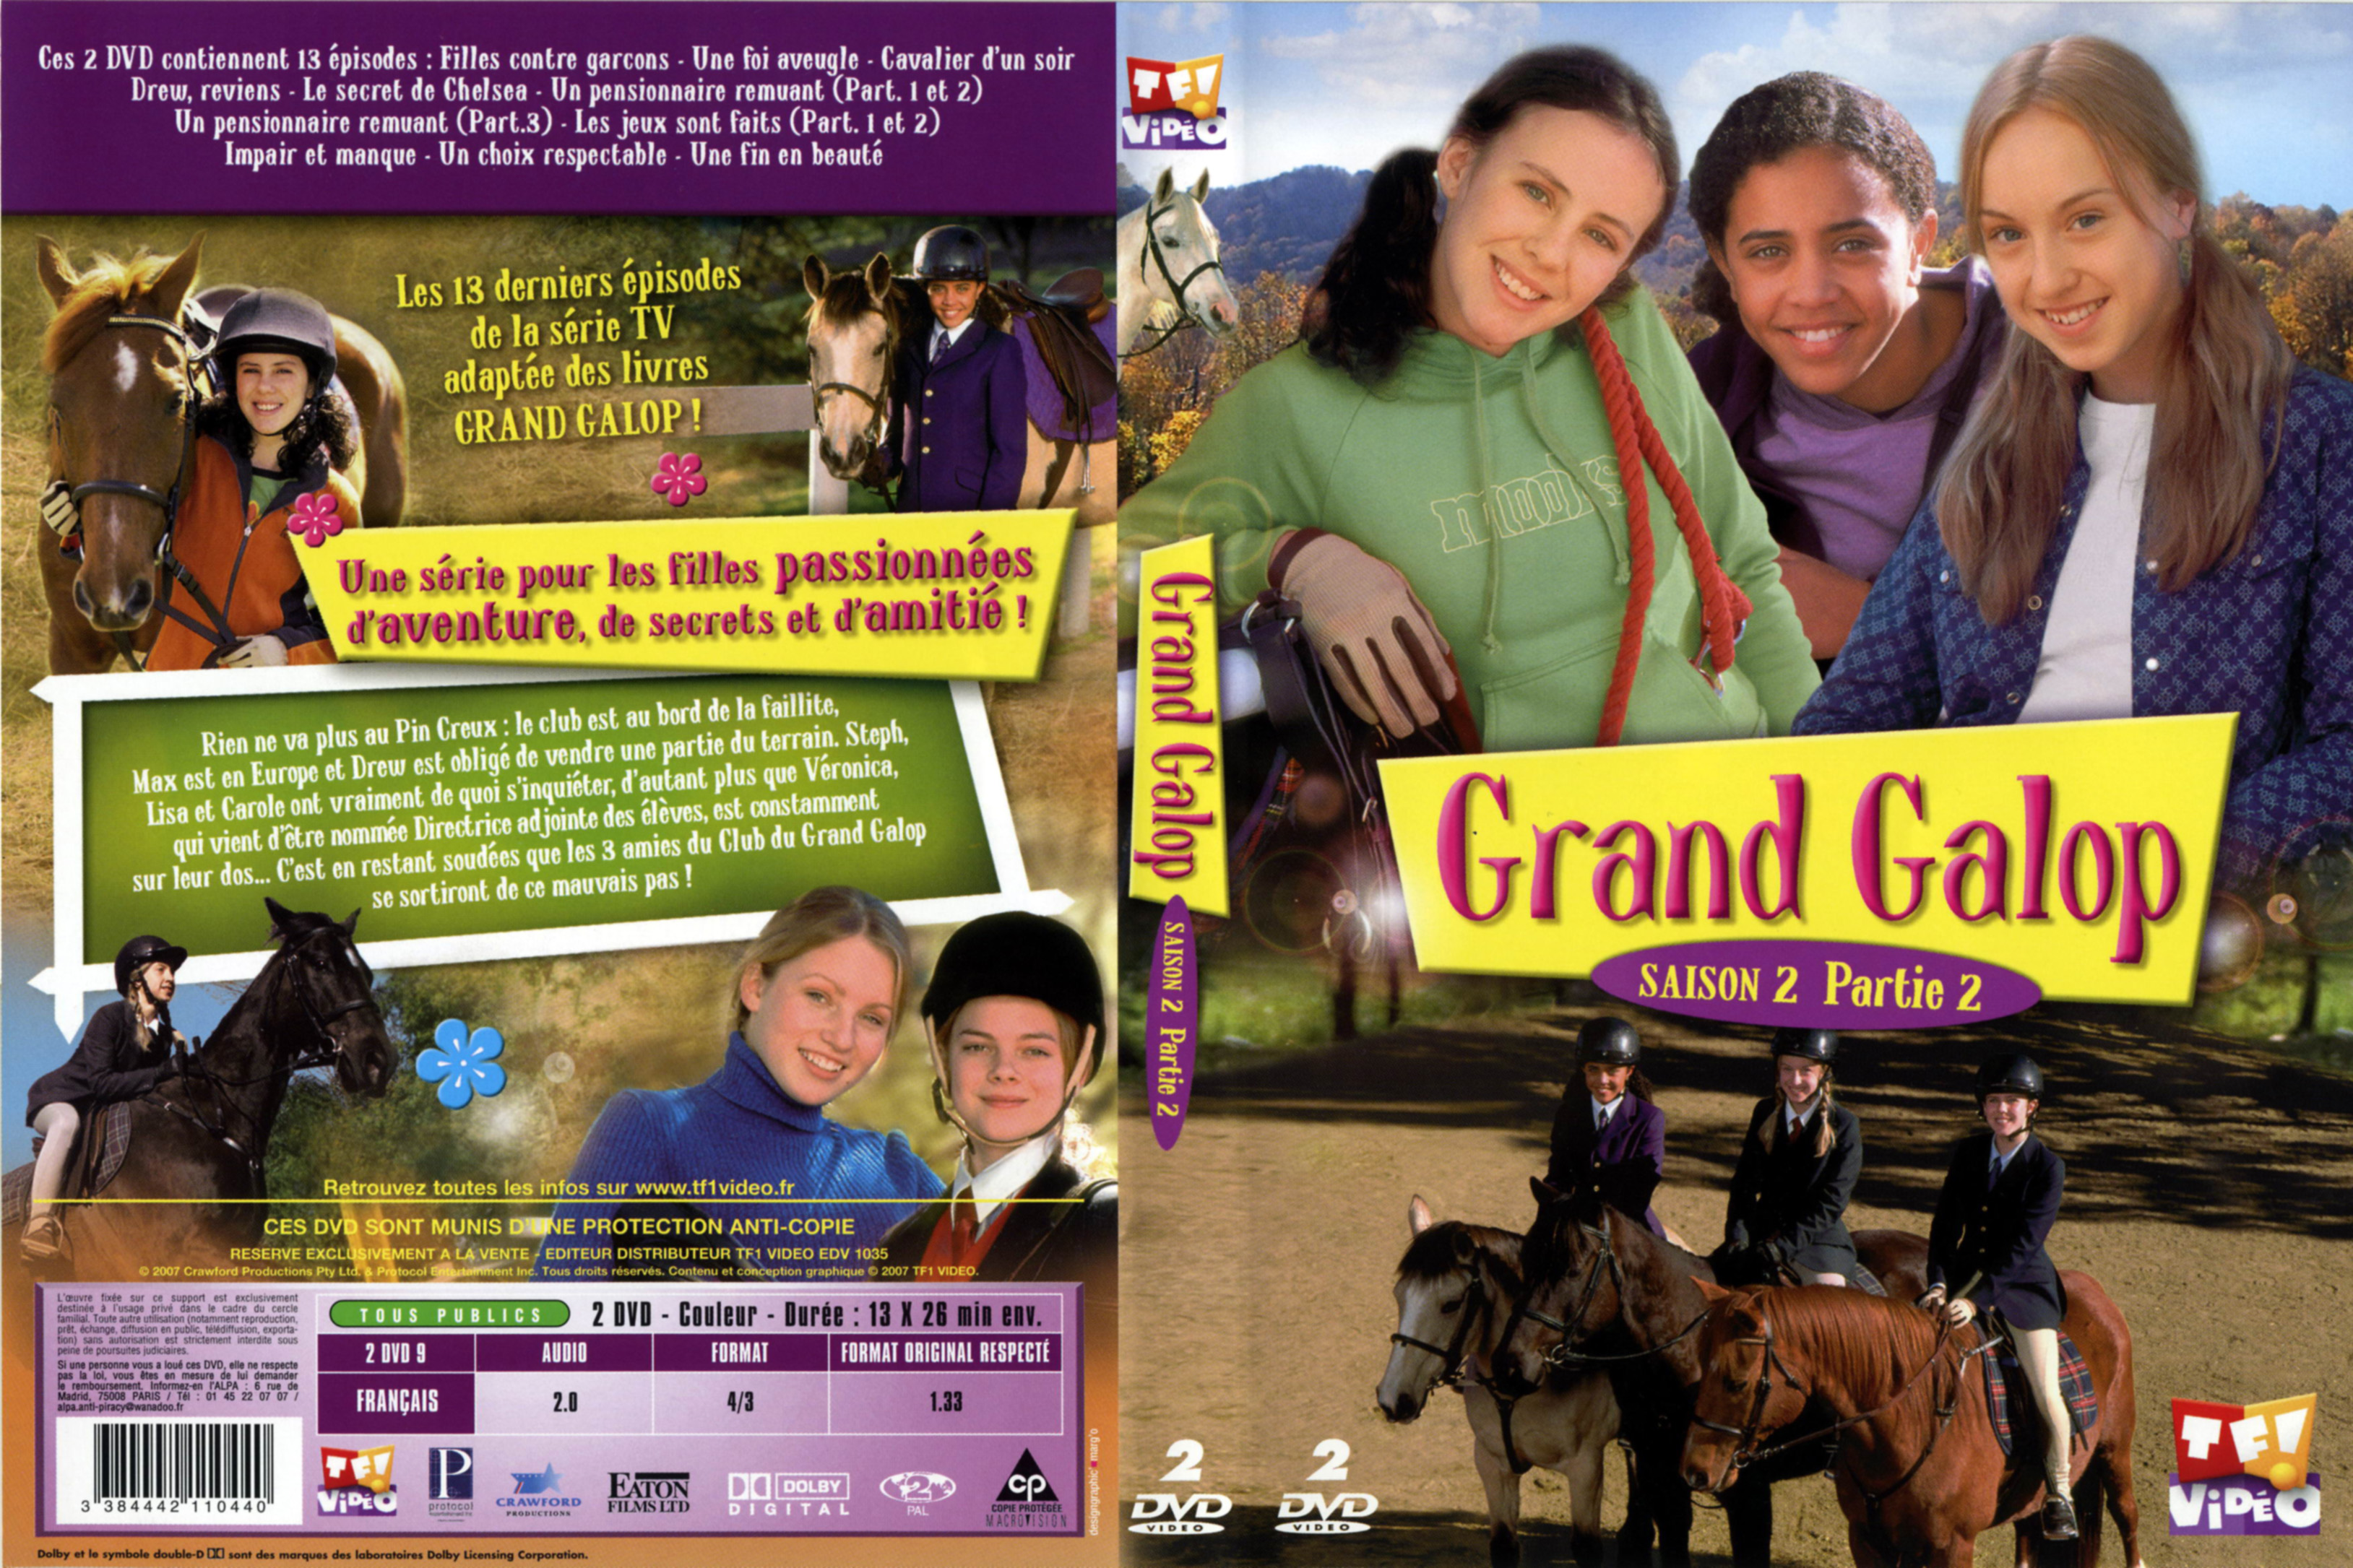 Jaquette DVD Grand galop Saison 2 Partie 2